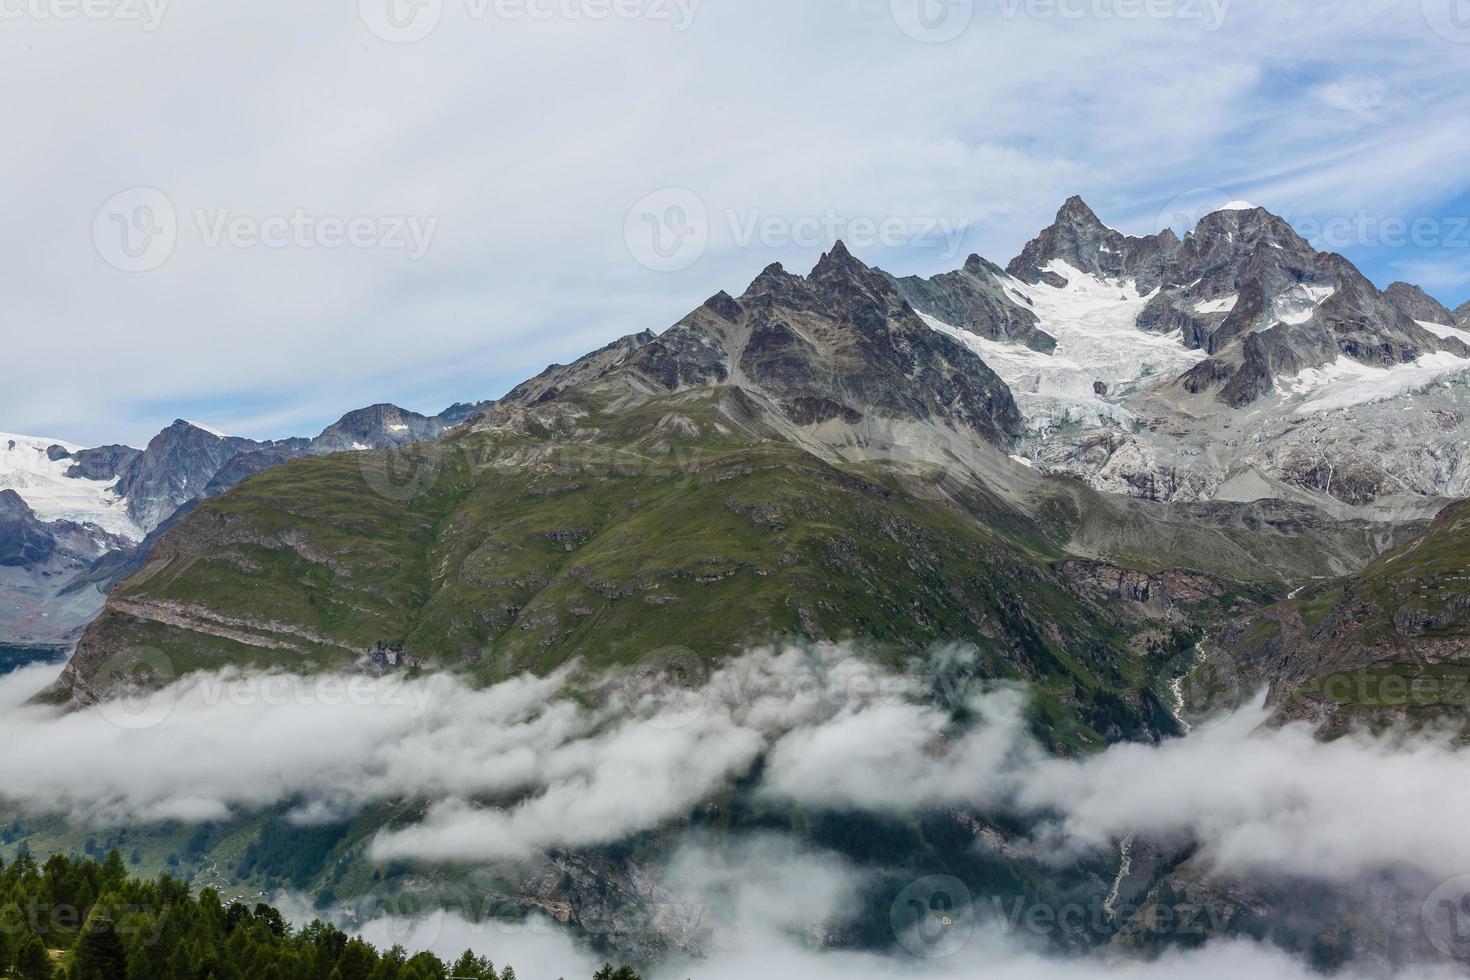 increíble naturaleza de suiza en los alpes suizos - fotografía de viajes foto